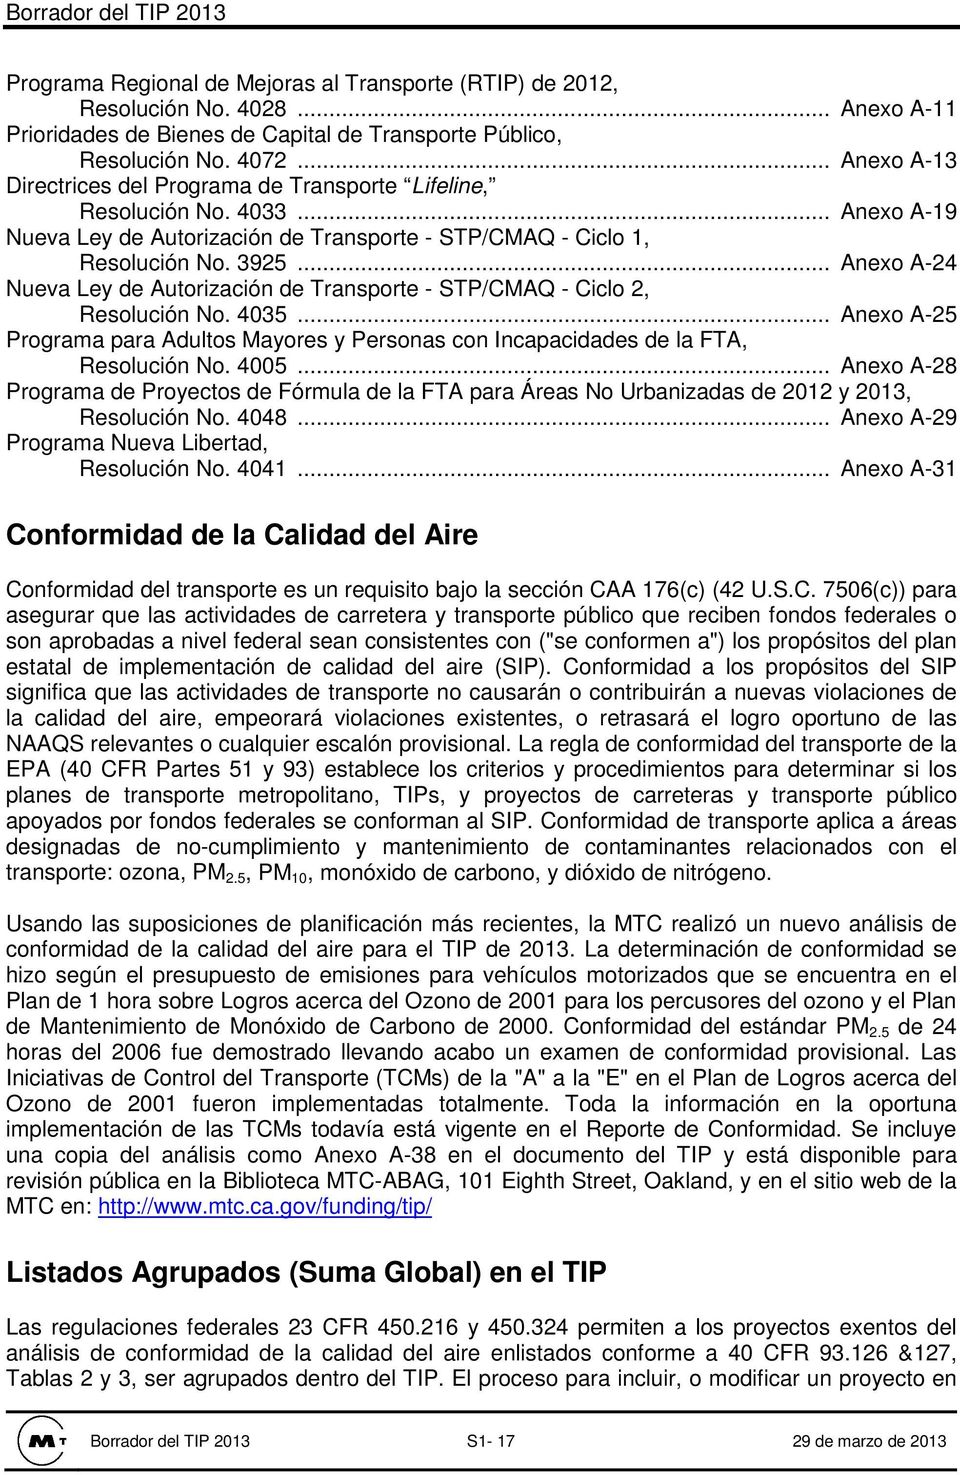 .. Anexo A-24 Nueva Ley de Autorización de Transporte - STP/CMAQ - Ciclo 2, Resolución No. 4035... Anexo A-25 Programa para Adultos Mayores y Personas con Incapacidades de la FTA, Resolución No. 4005.